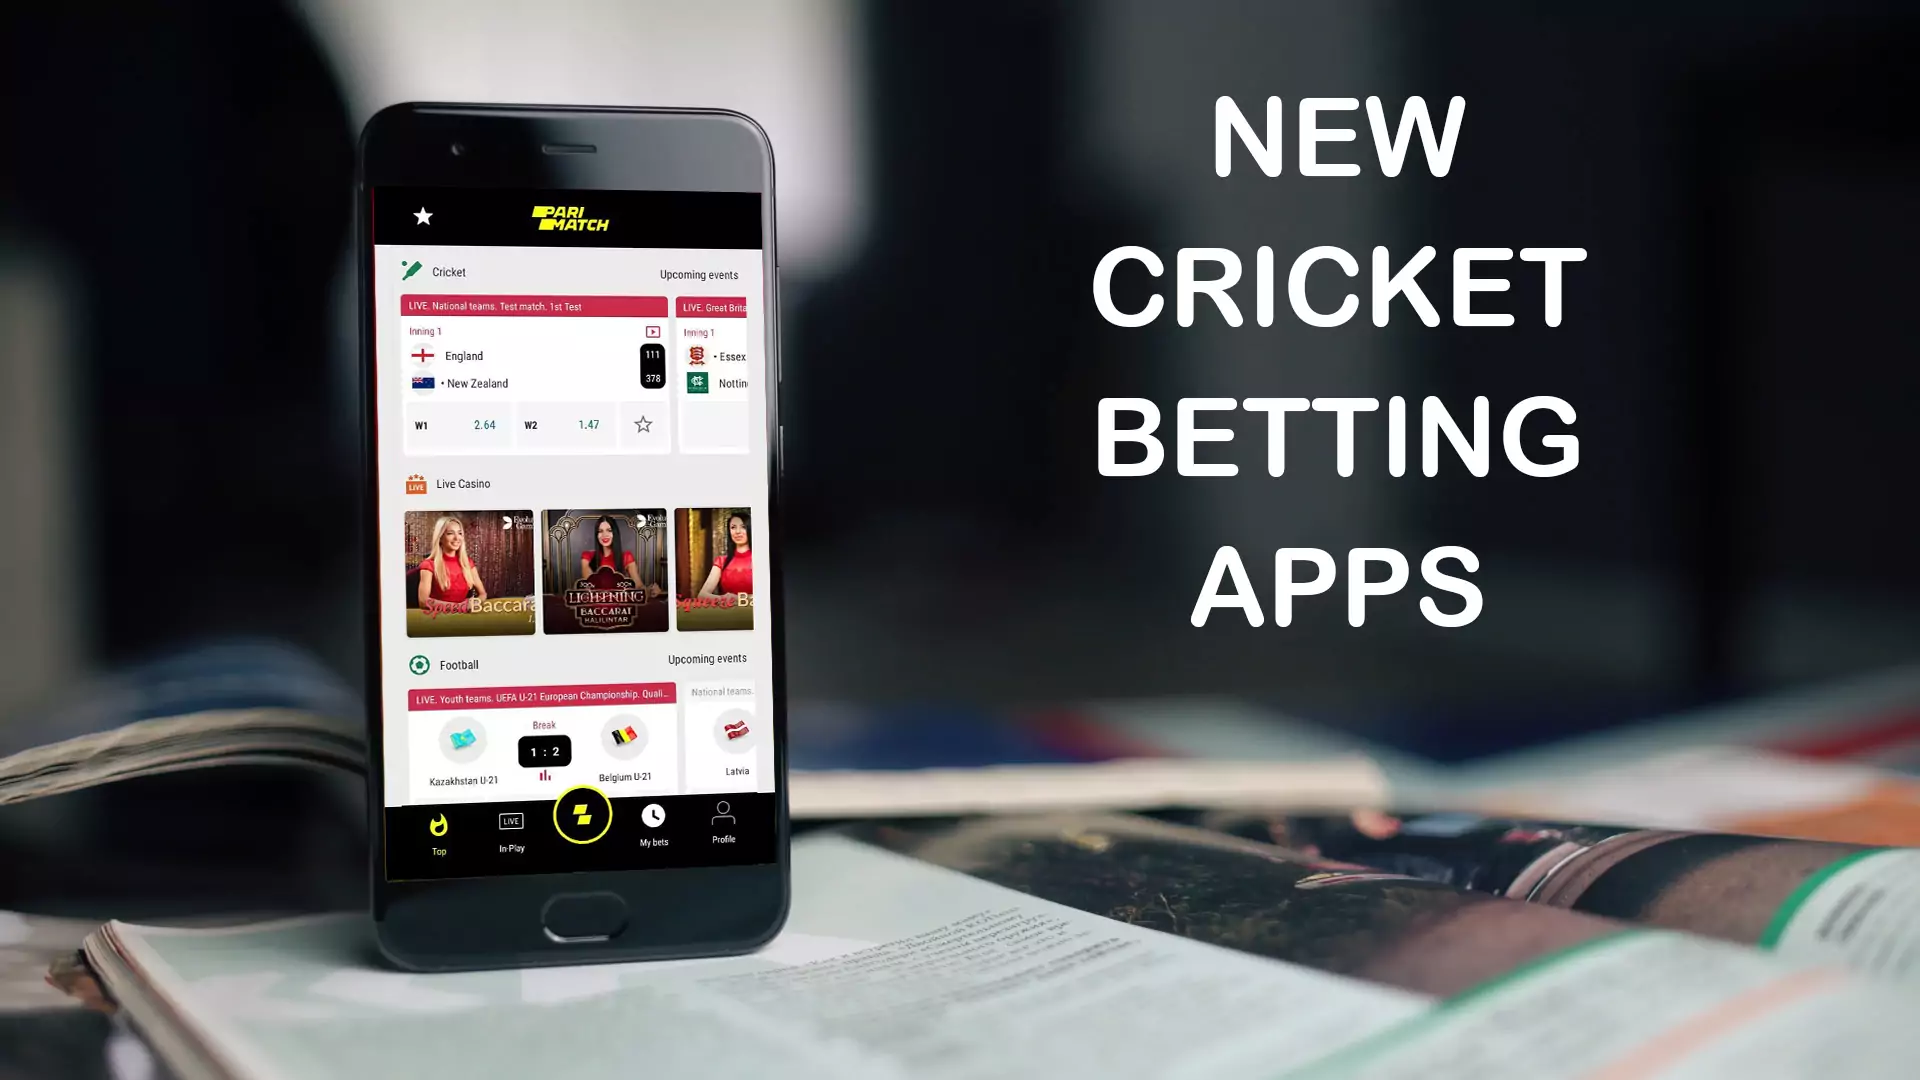 भारतीय उपयोगकर्ताओं के लिए नए क्रिकेट सट्टेबाजी ऐप्स की रैंकिंग देखें ।